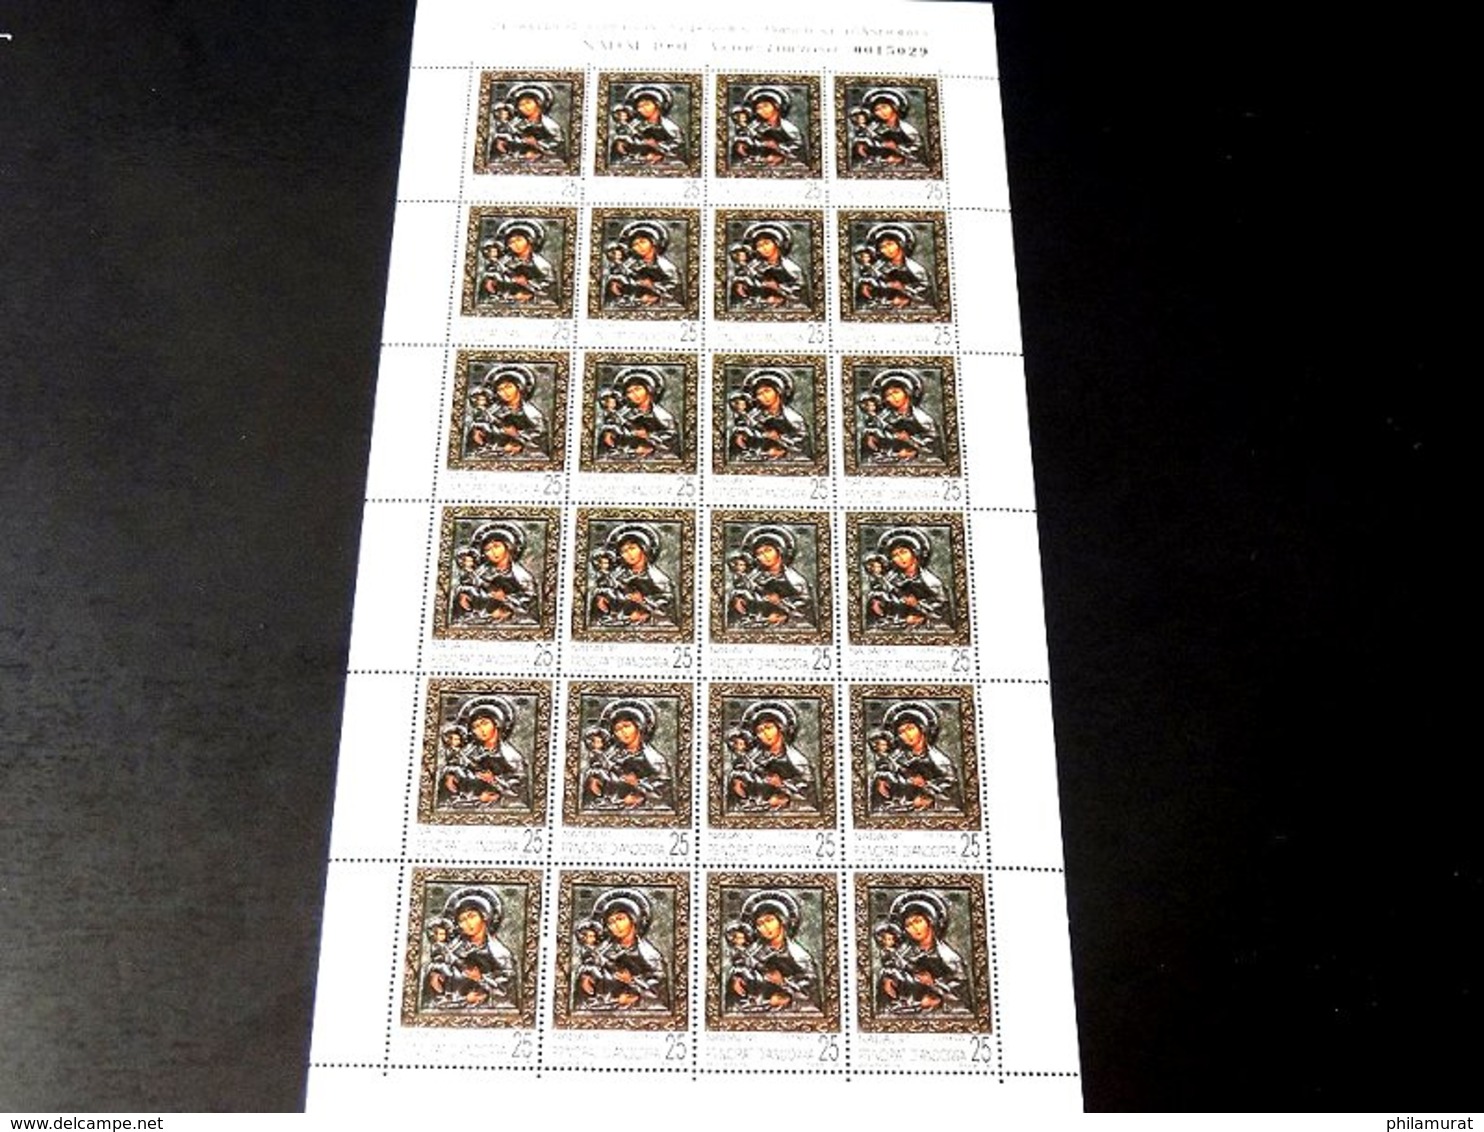 Andorre espagnol 1978/1991 : 2600 timbres ** en feuilles ou blocs COTE 2000 €